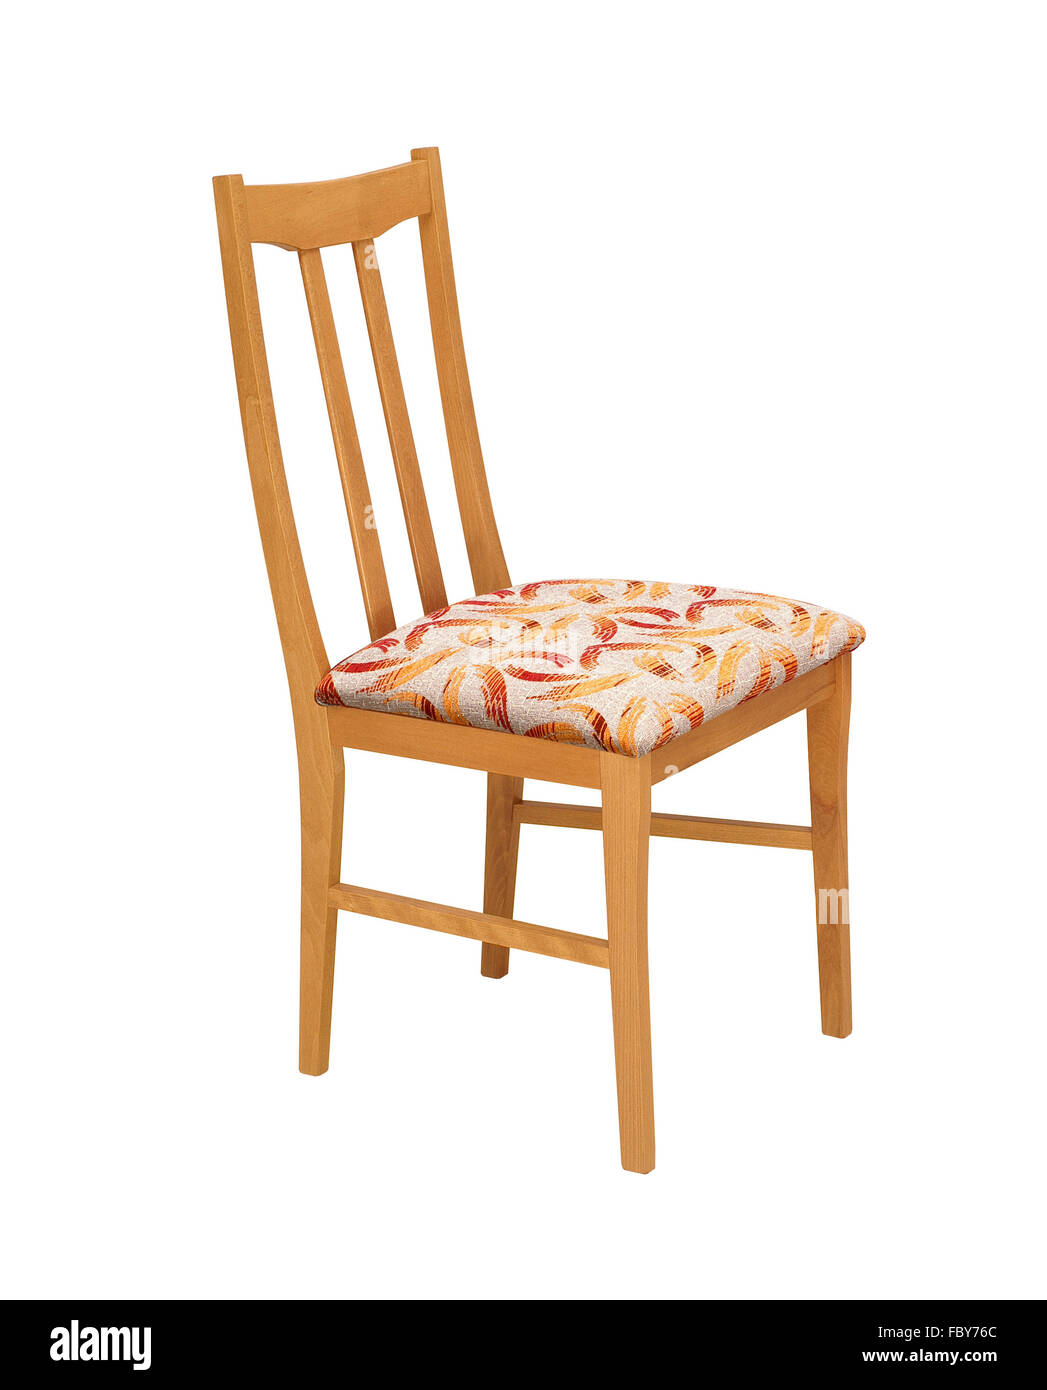 Chaise en bois isolé sur fond blanc avec clipping path Banque D'Images